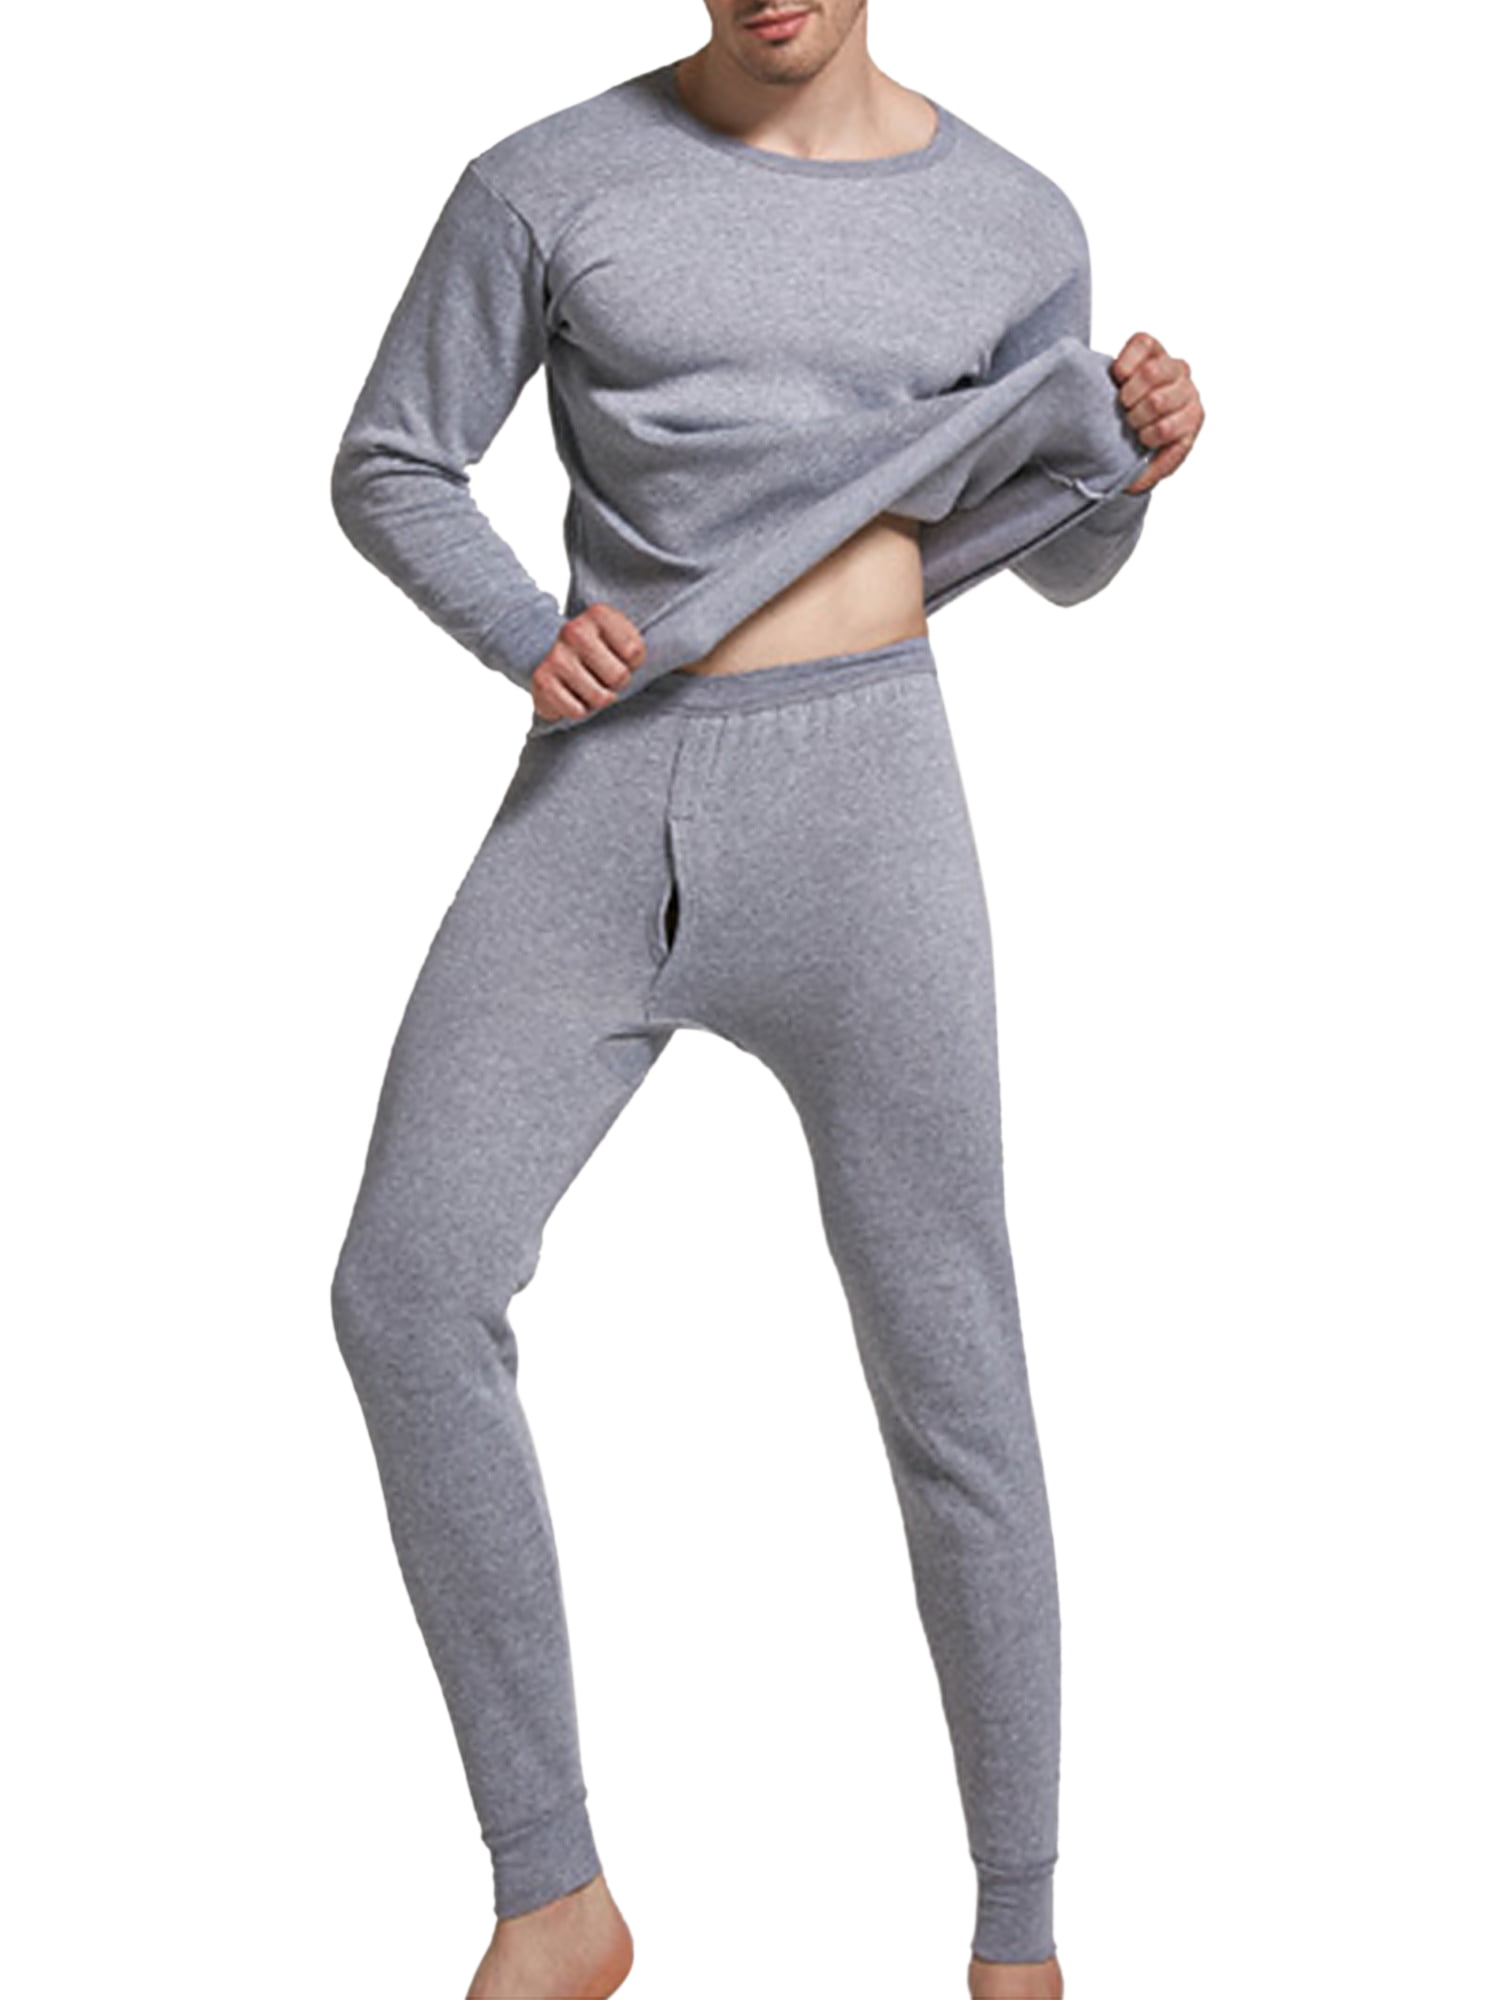 Men Women Winter Warm Sleepwear Thermal Underwear Long Johns Top & Bottom Set